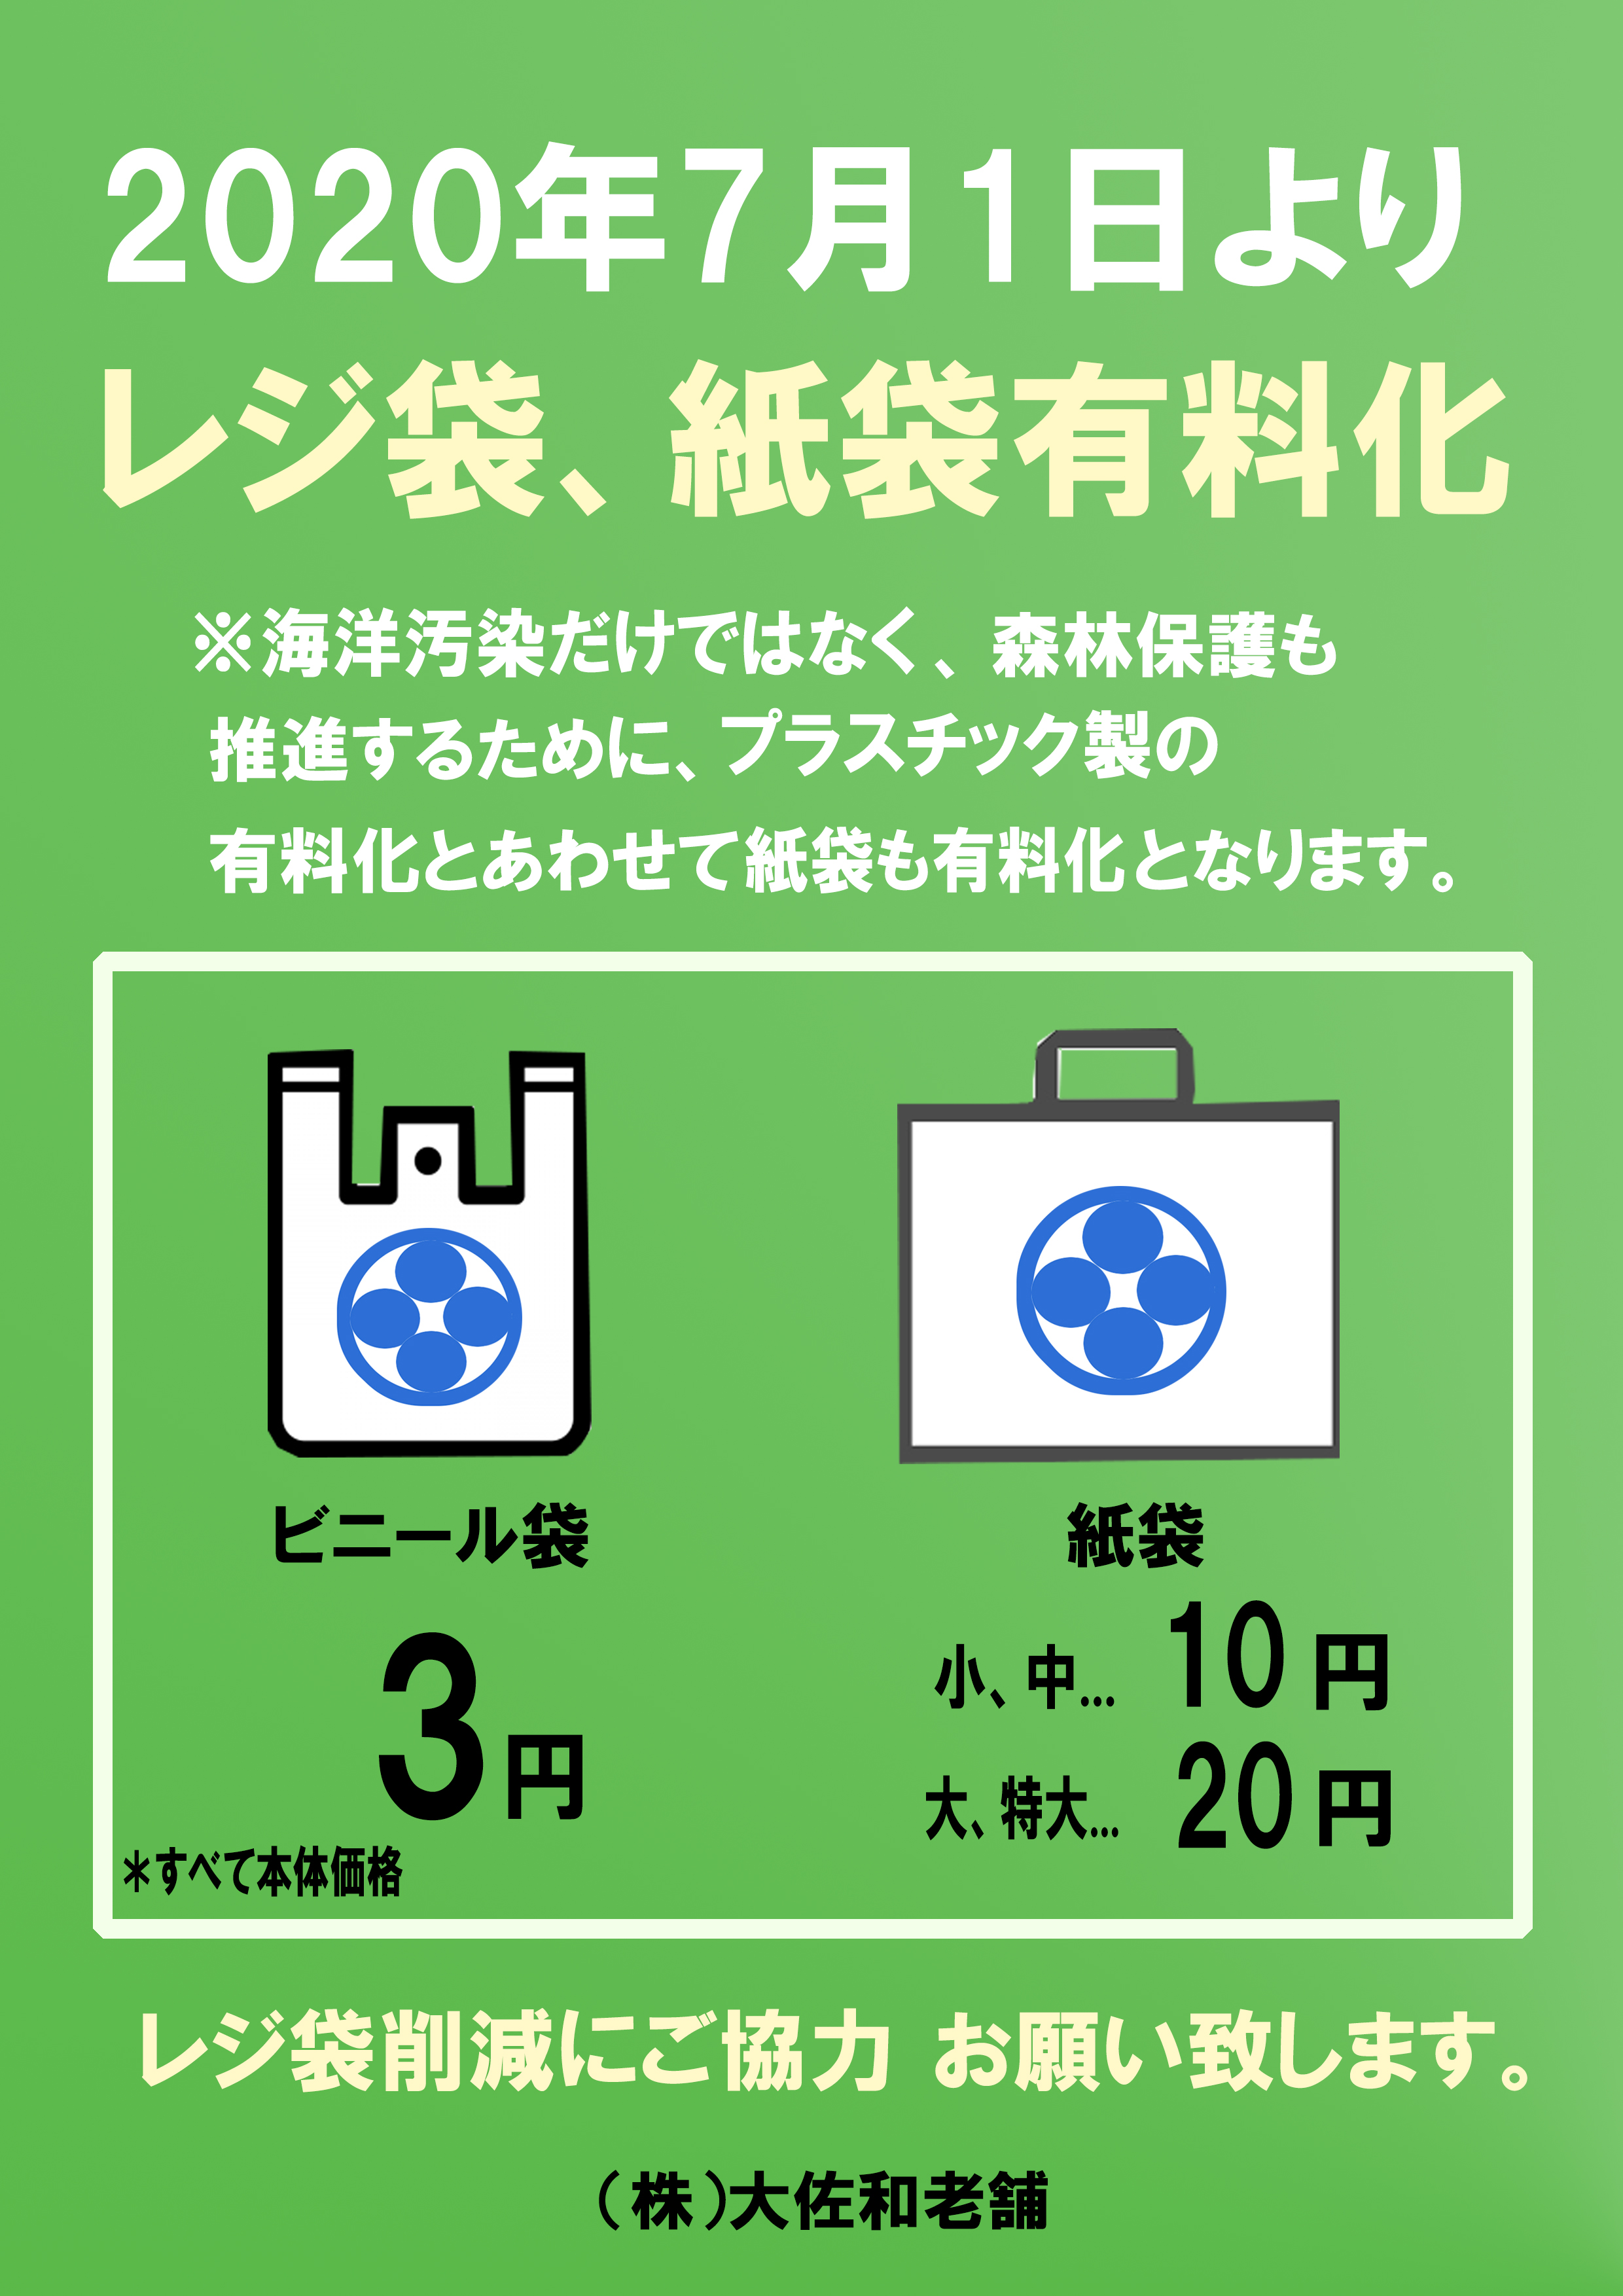 お客様へ～重要なお知らせ・レジ袋、紙袋有料化について〜